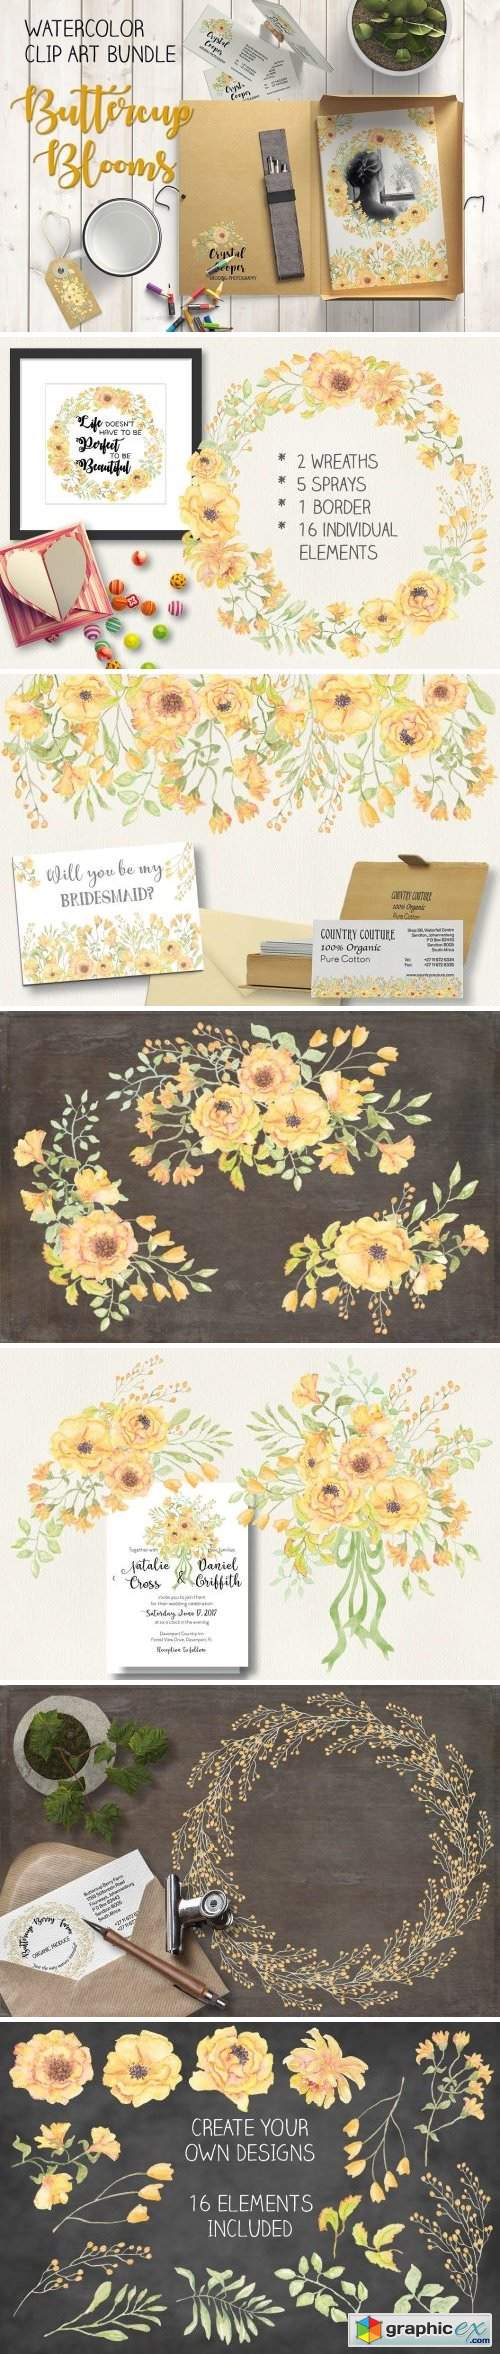 Watercolor bundle: Buttercup blooms